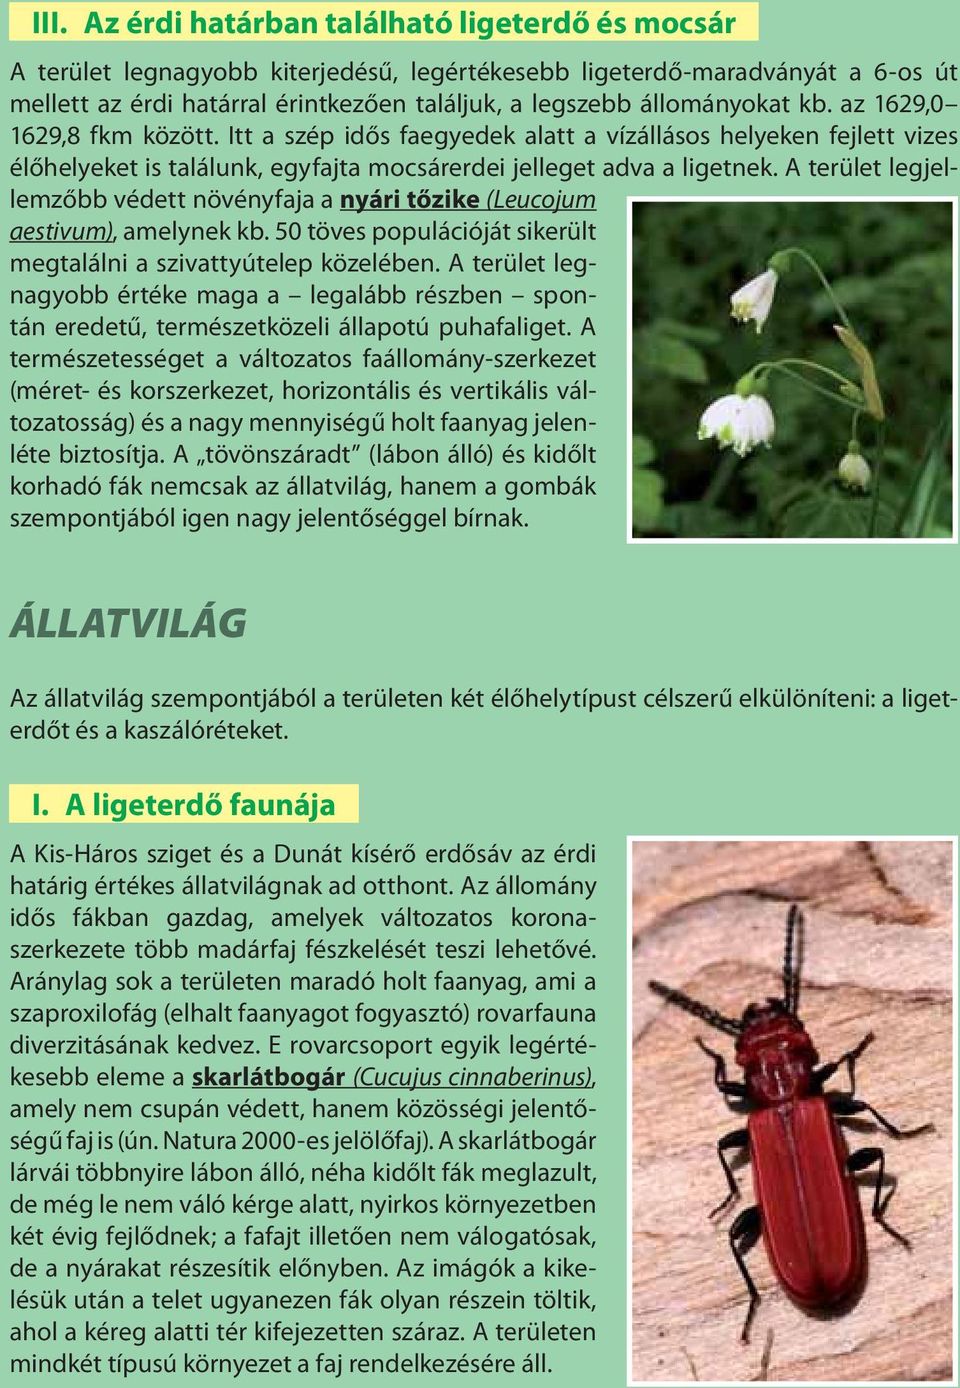 A terület legjellemzőbb védett növényfaja a nyári tőzike (Leucojum aestivum), amelynek kb. 50 töves populációját sikerült megtalálni a szivattyútelep közelében.